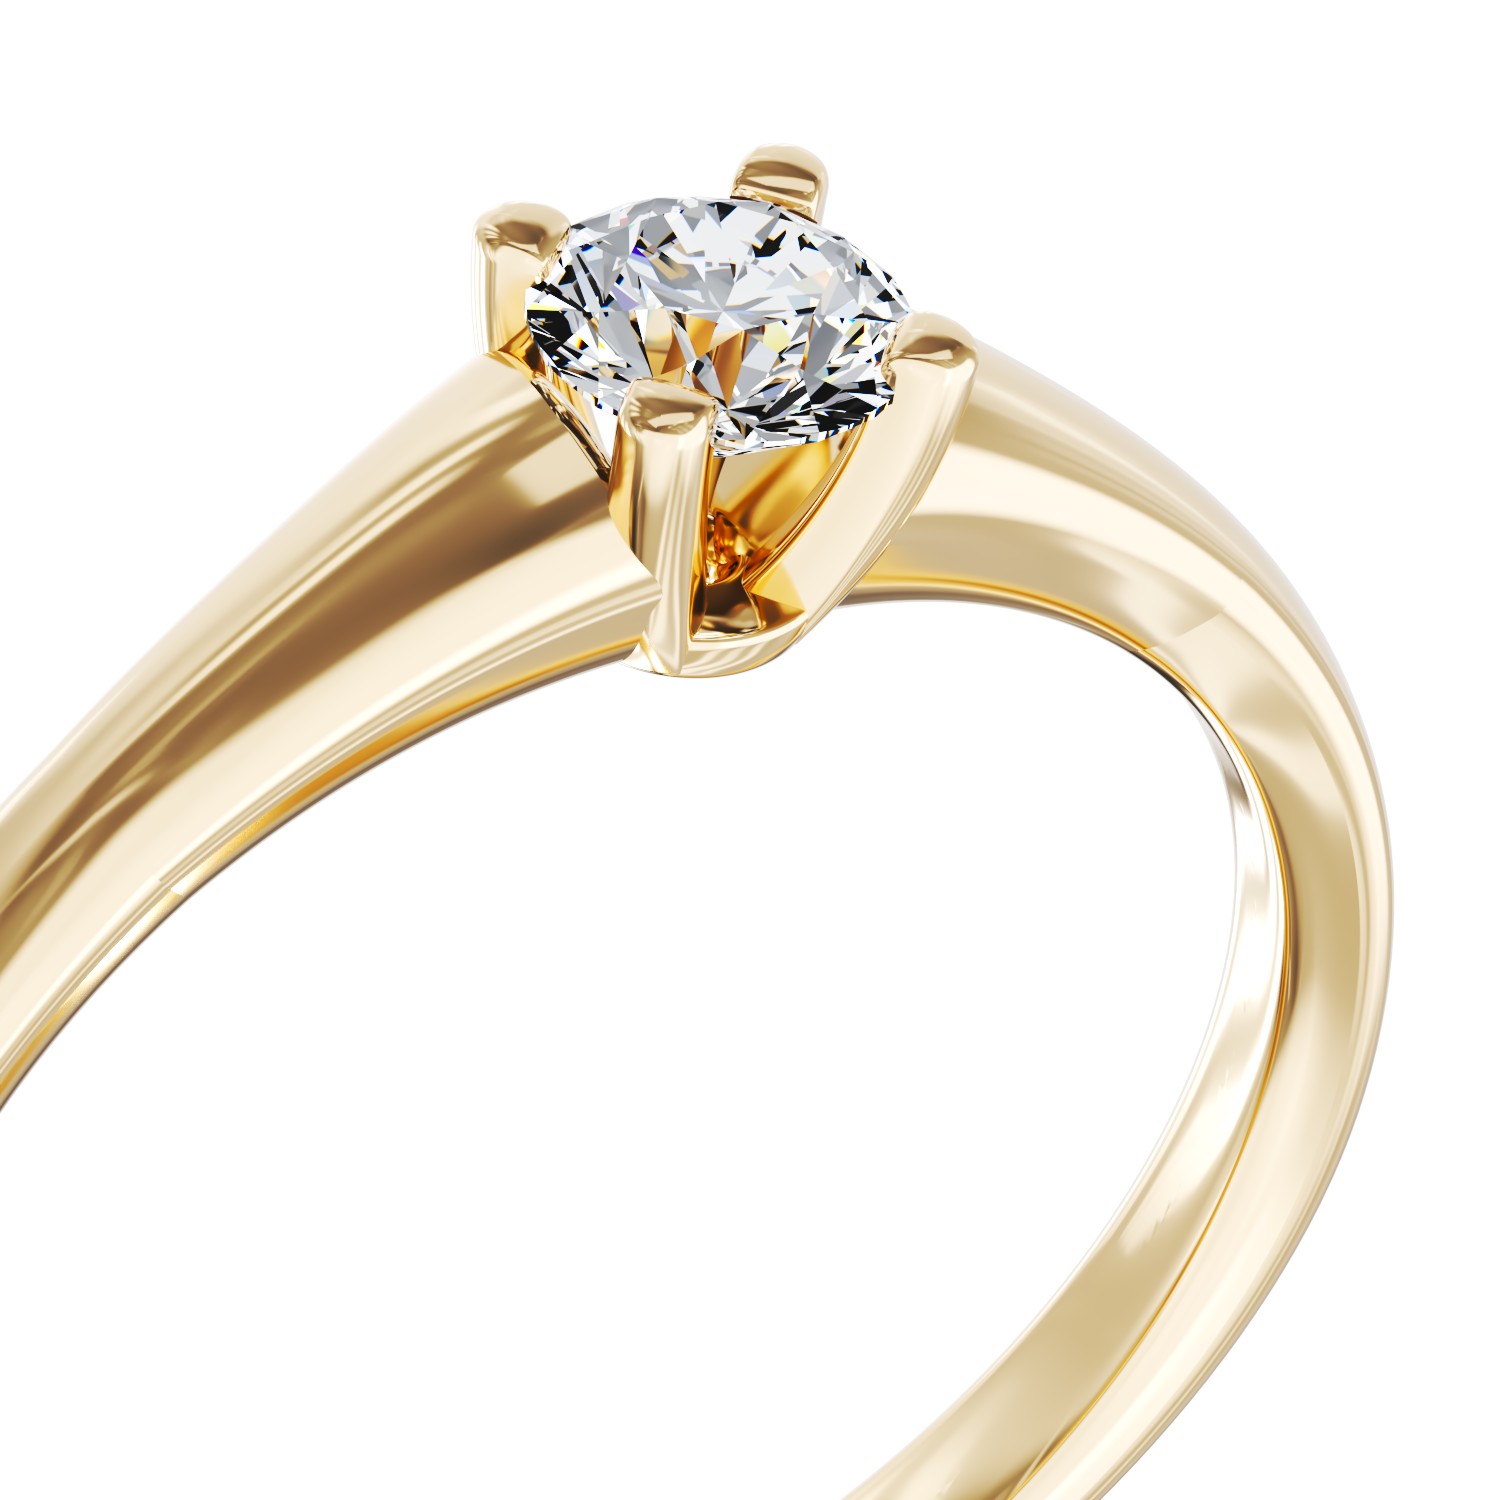 Eljegyzési gyűrű 18K-os sárga aranyból 0,19ct gyémánttal. Gramm: 2,45